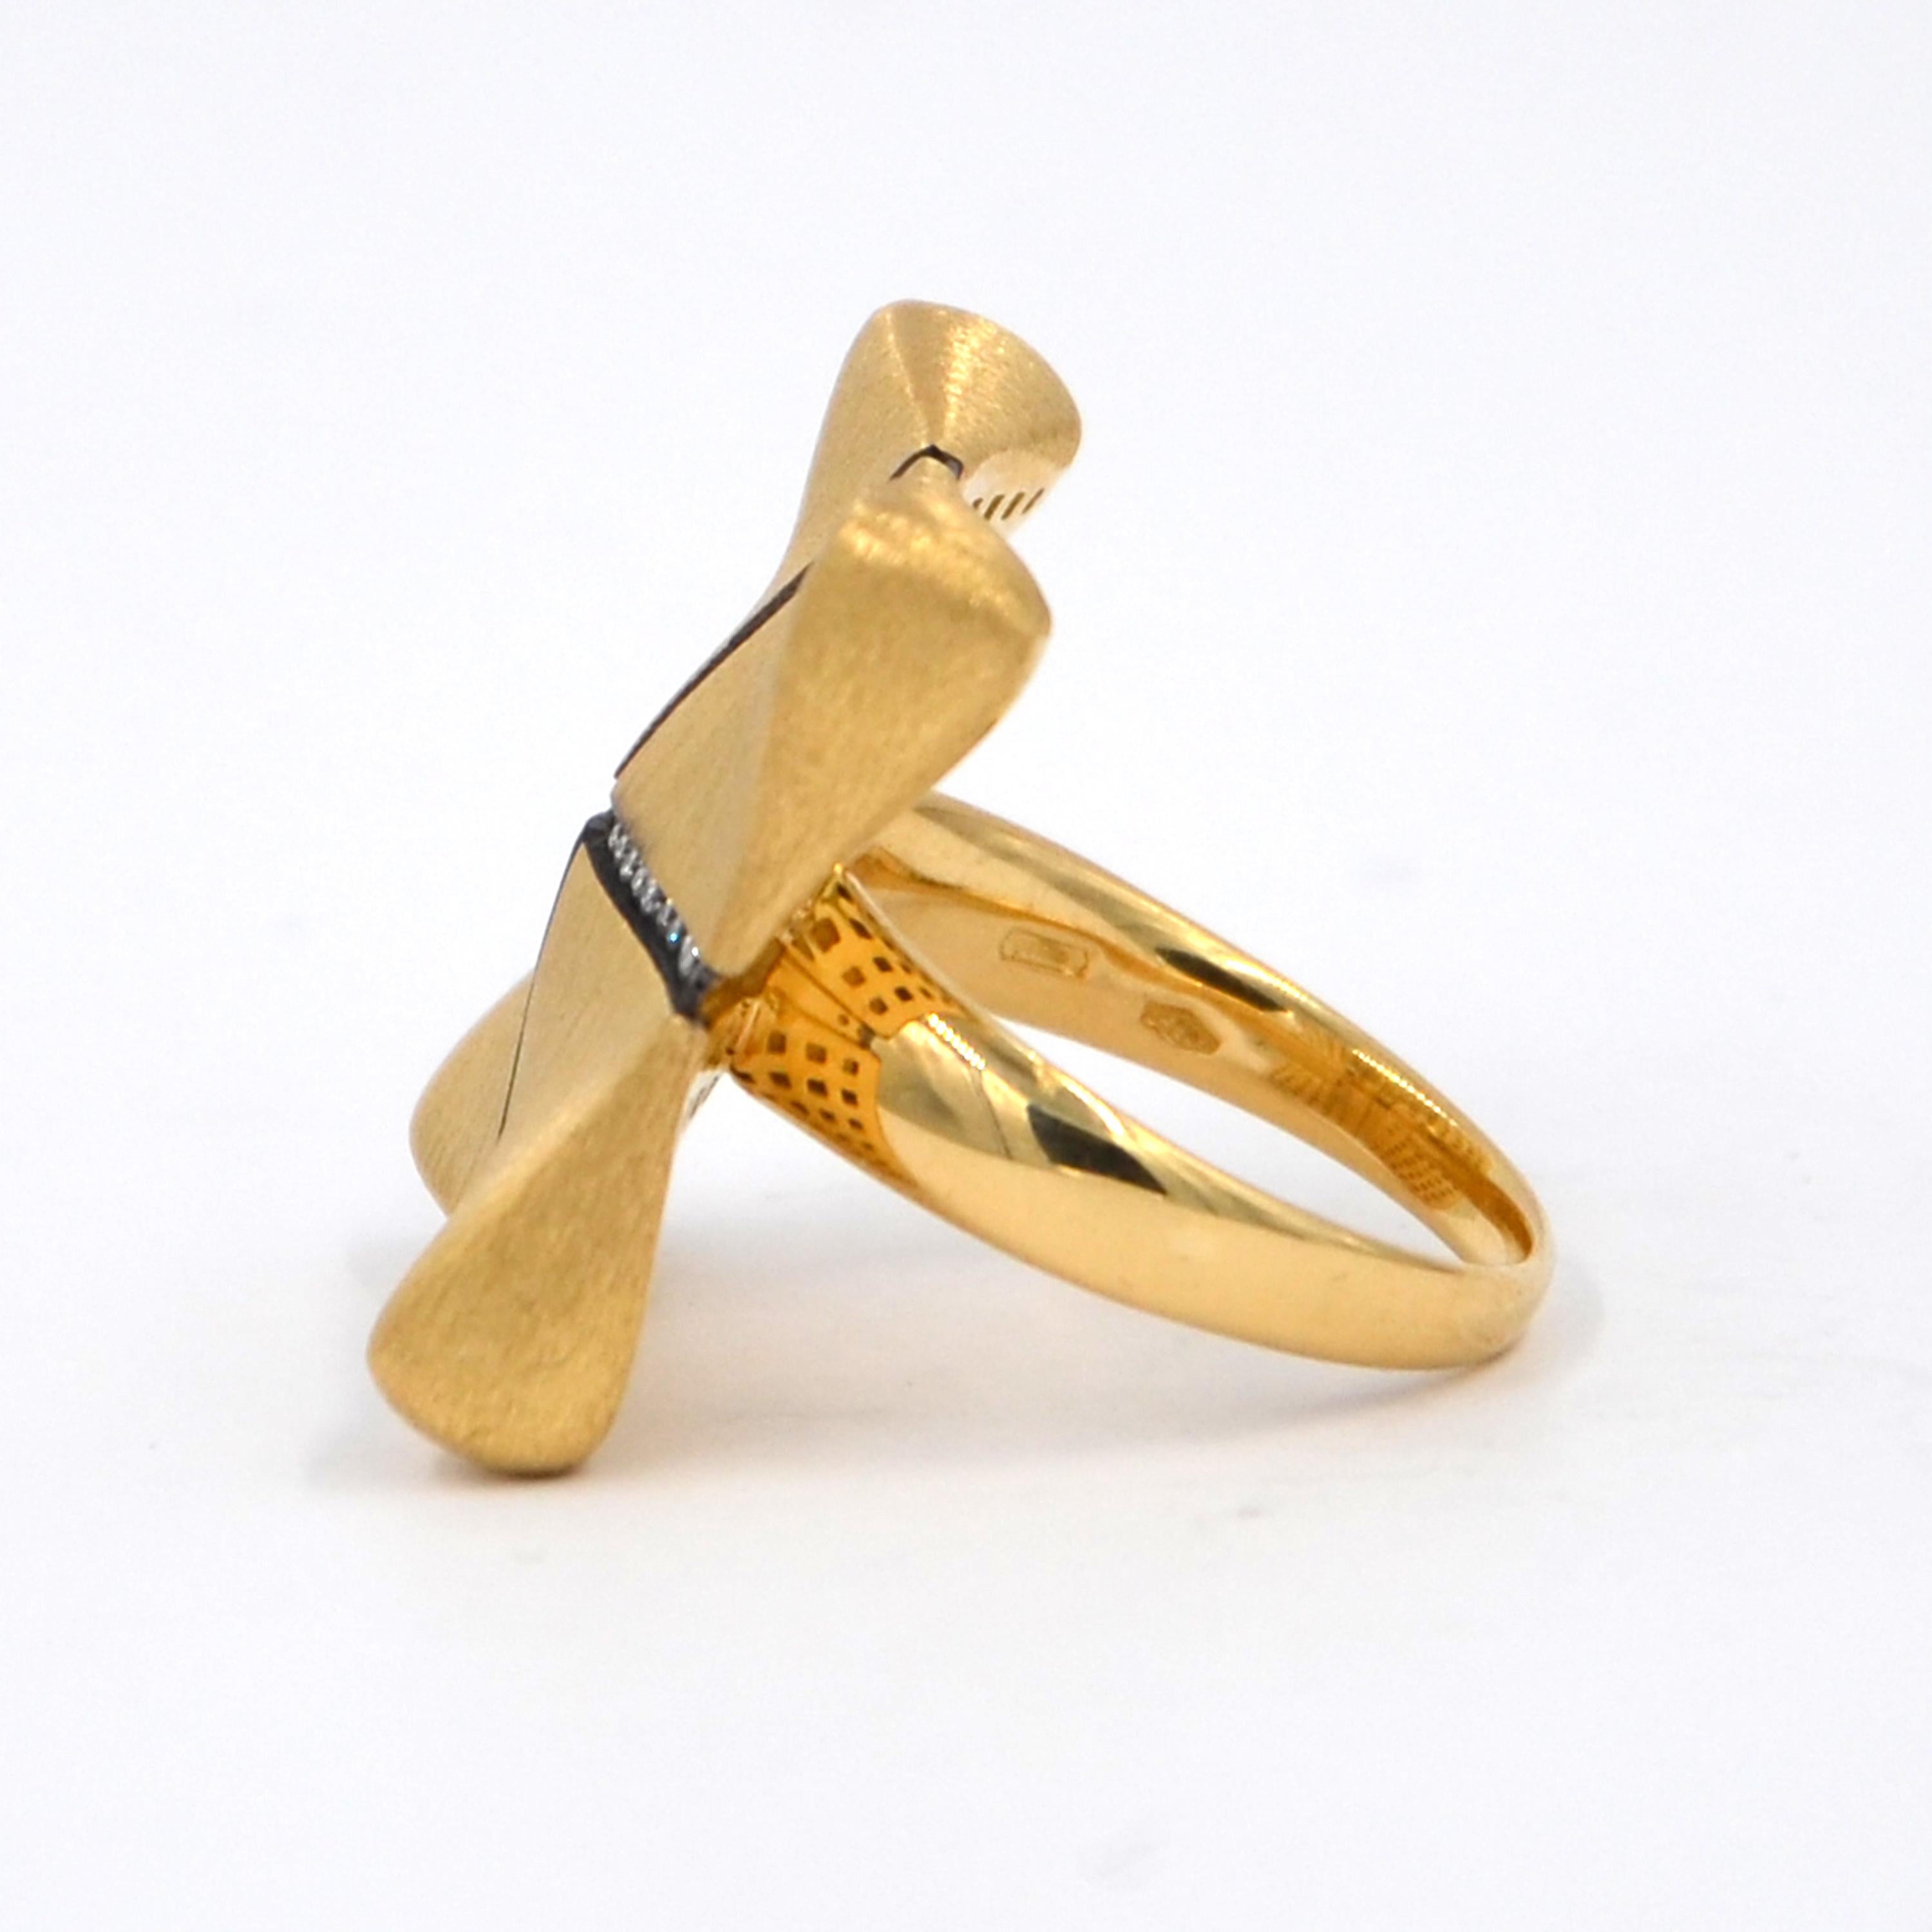 Garavelli 18 Karat Rose Gold White Diamonds Award Collection Ring 1